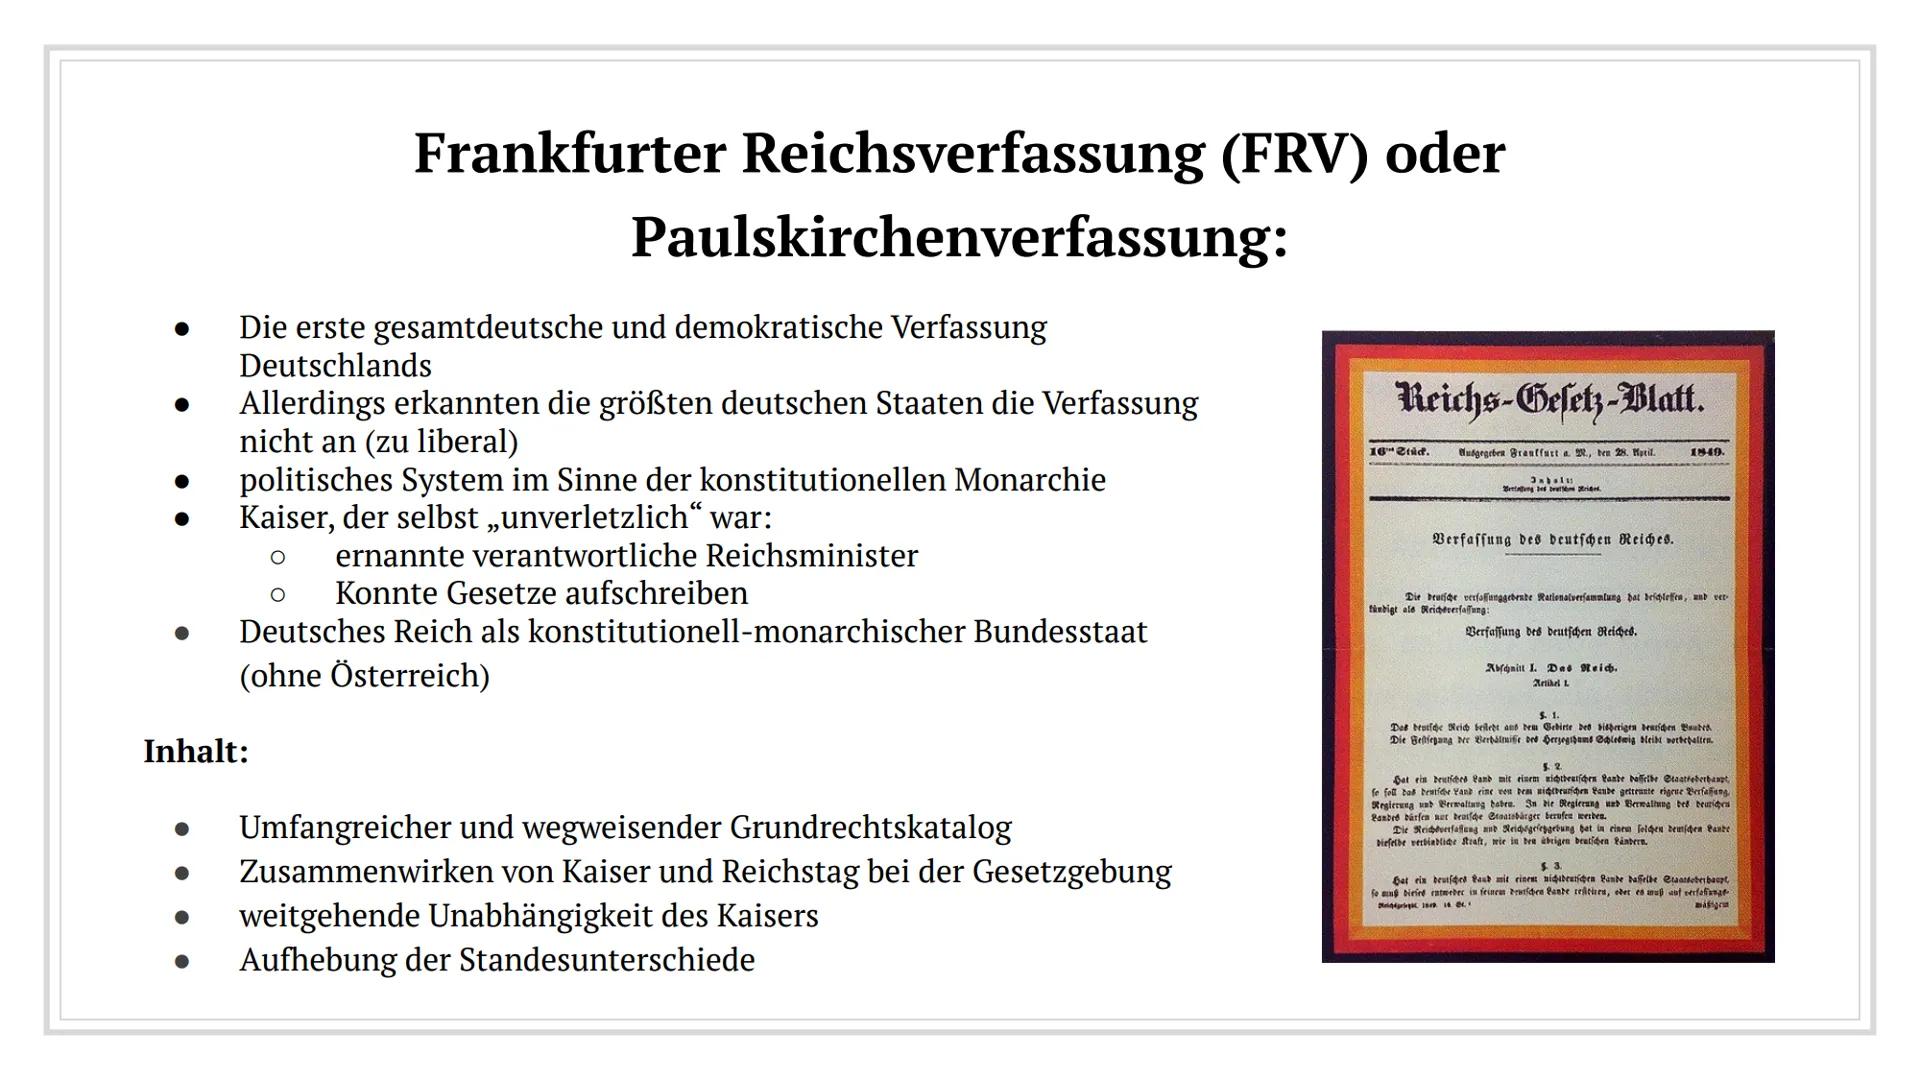 Revolution 1848/49
In Deutschland Inhaltsverzeichnis
1. Kurze Zusammenfassung I und II
2. Märzrevolution
3. Nationalversammlung
4. Frankfurt